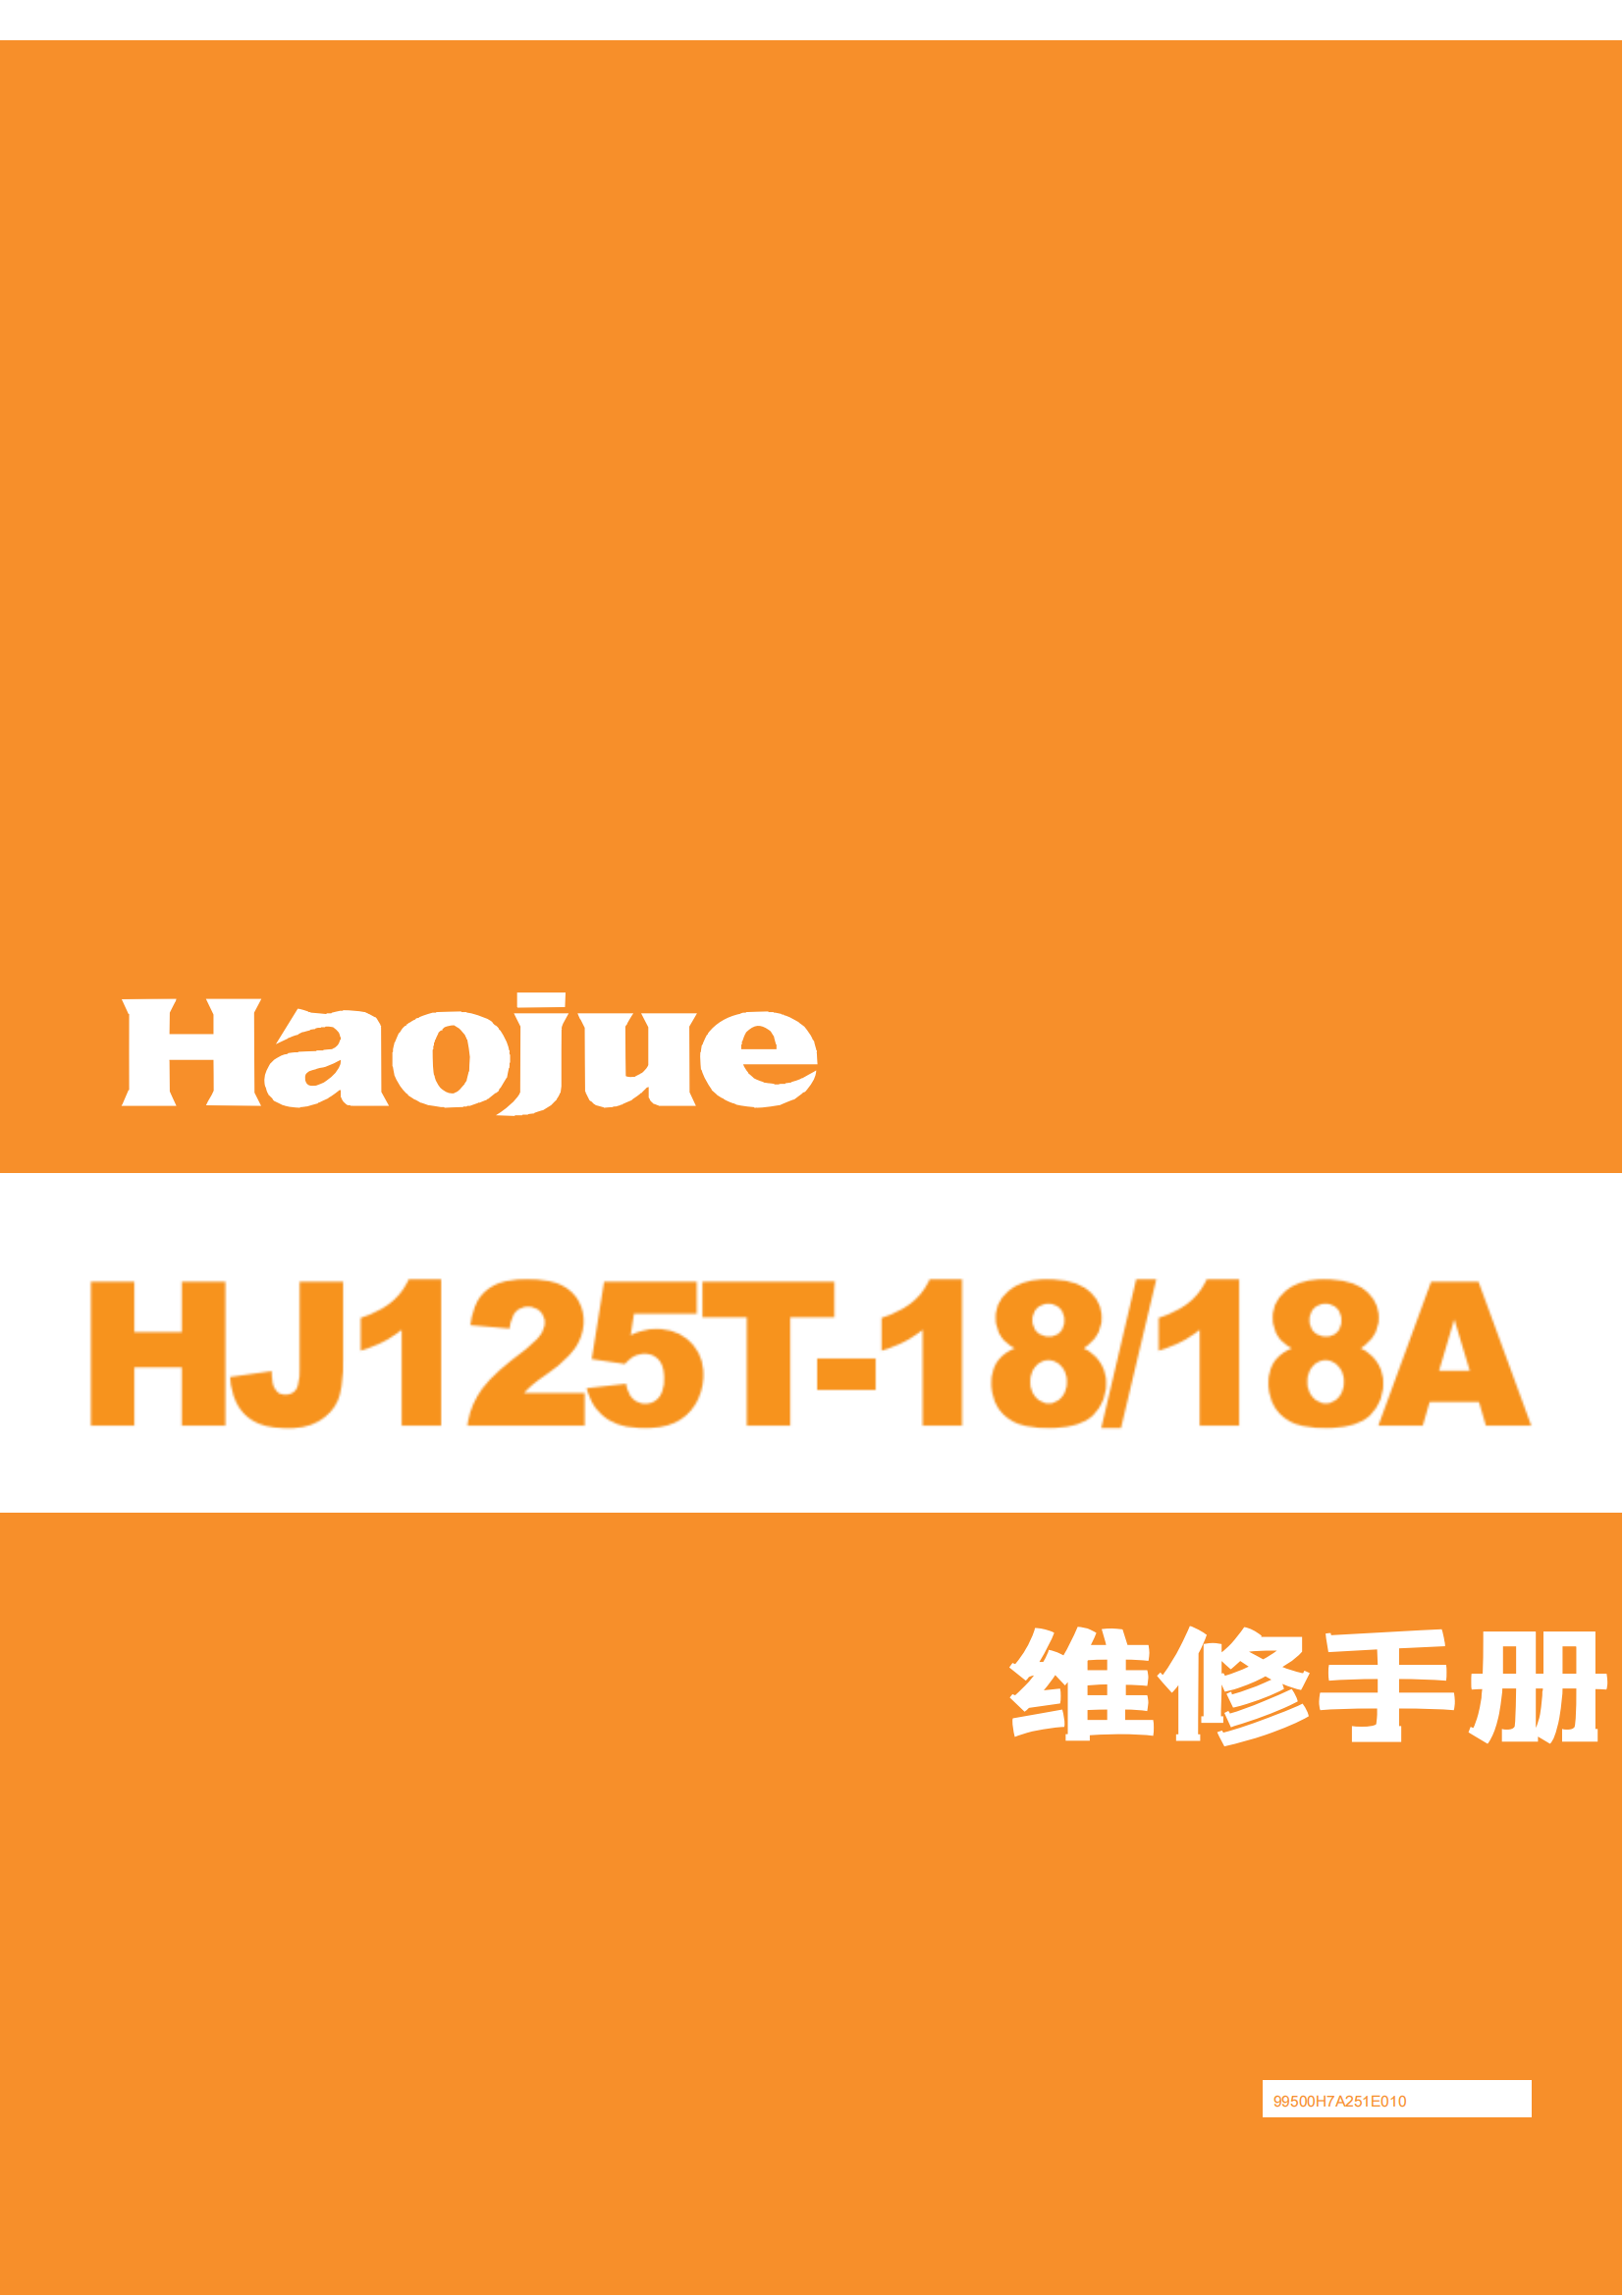 简体中文2013年豪爵灵迪维修手册HJ125T-18 HT125T-18A维修手册插图